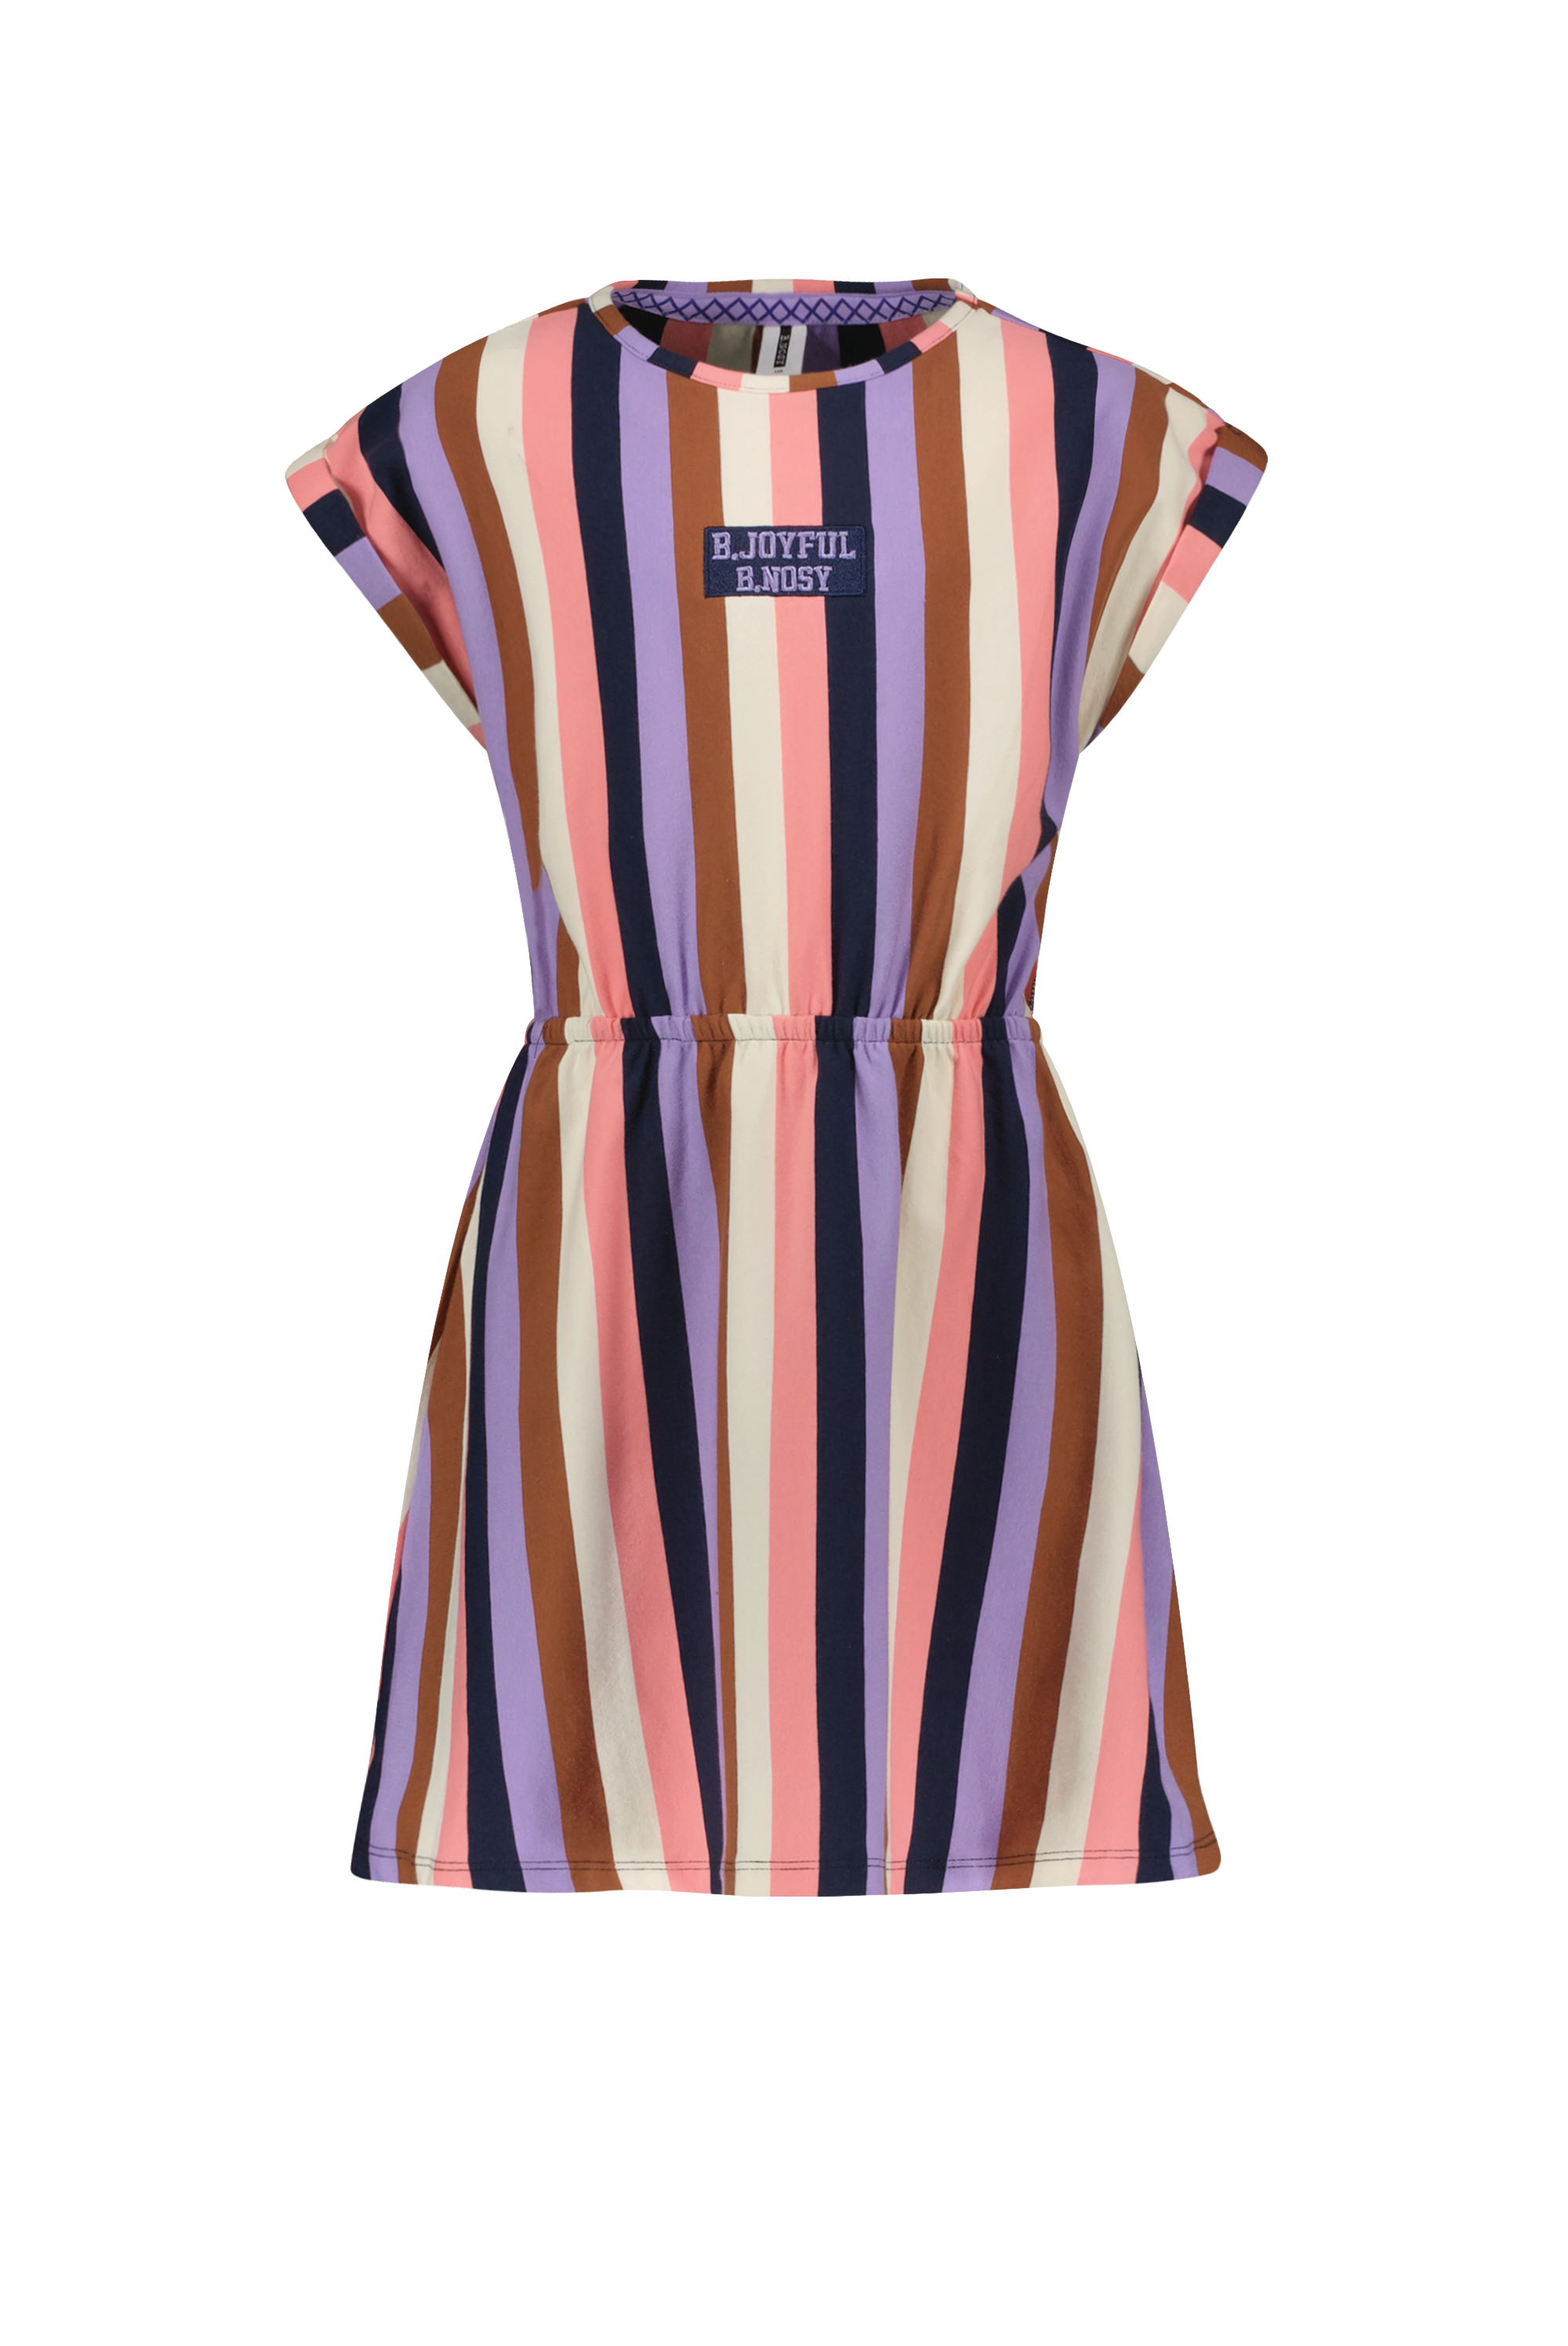 Jurk Girls multi color stripe dress w/ cut out side part